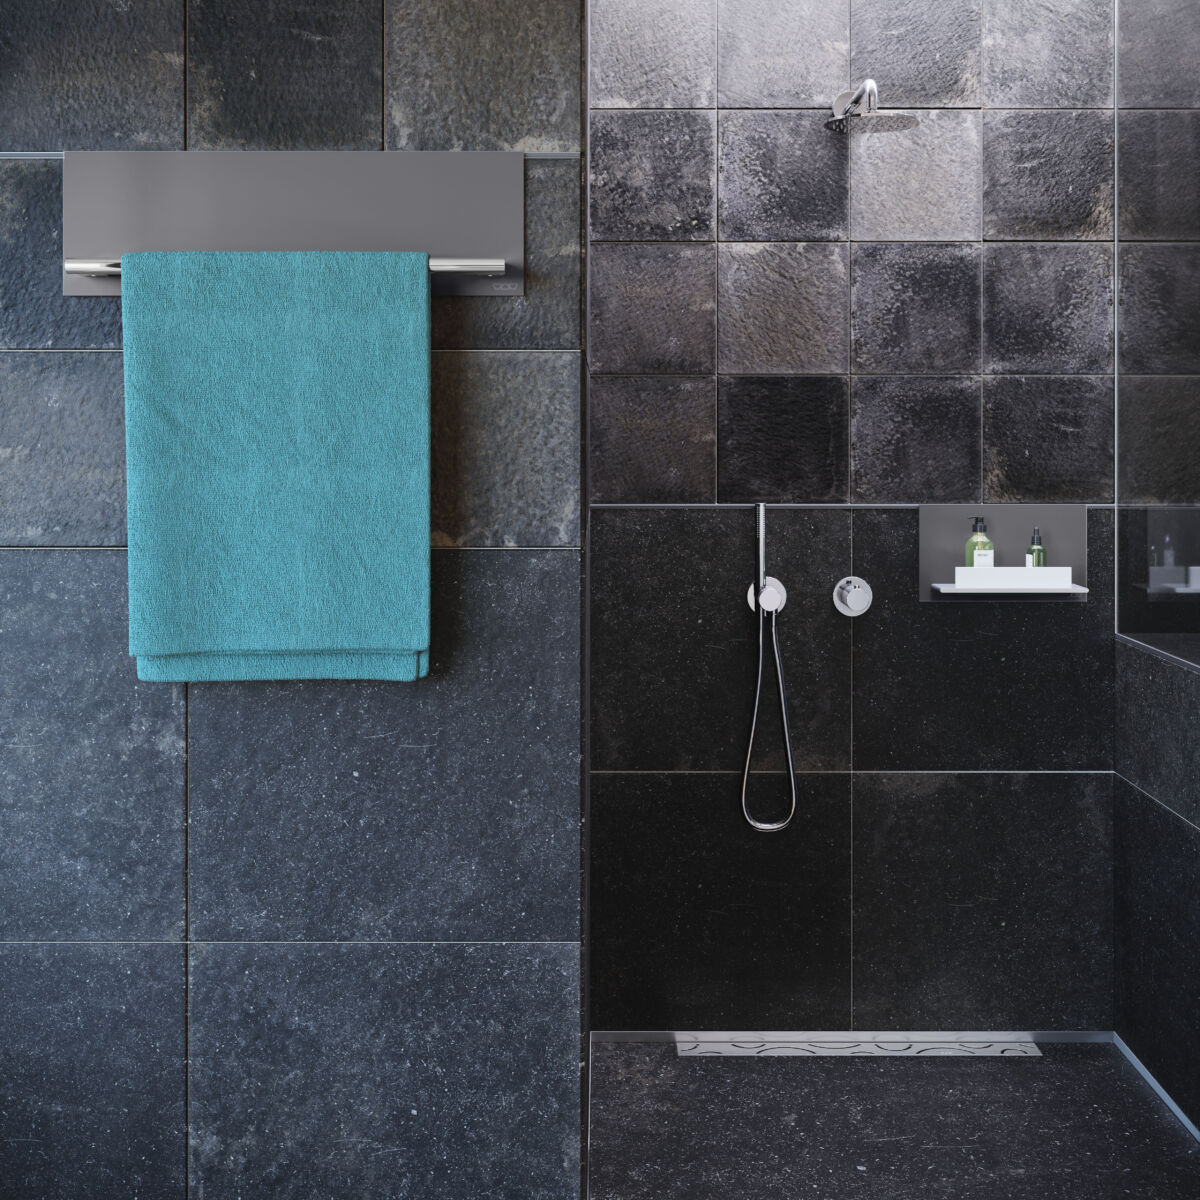 Praktische Handtuchhalter gehören ebenso zum Accessoire-Sortiment wie nützliche Ablagen für den Duschbereich.